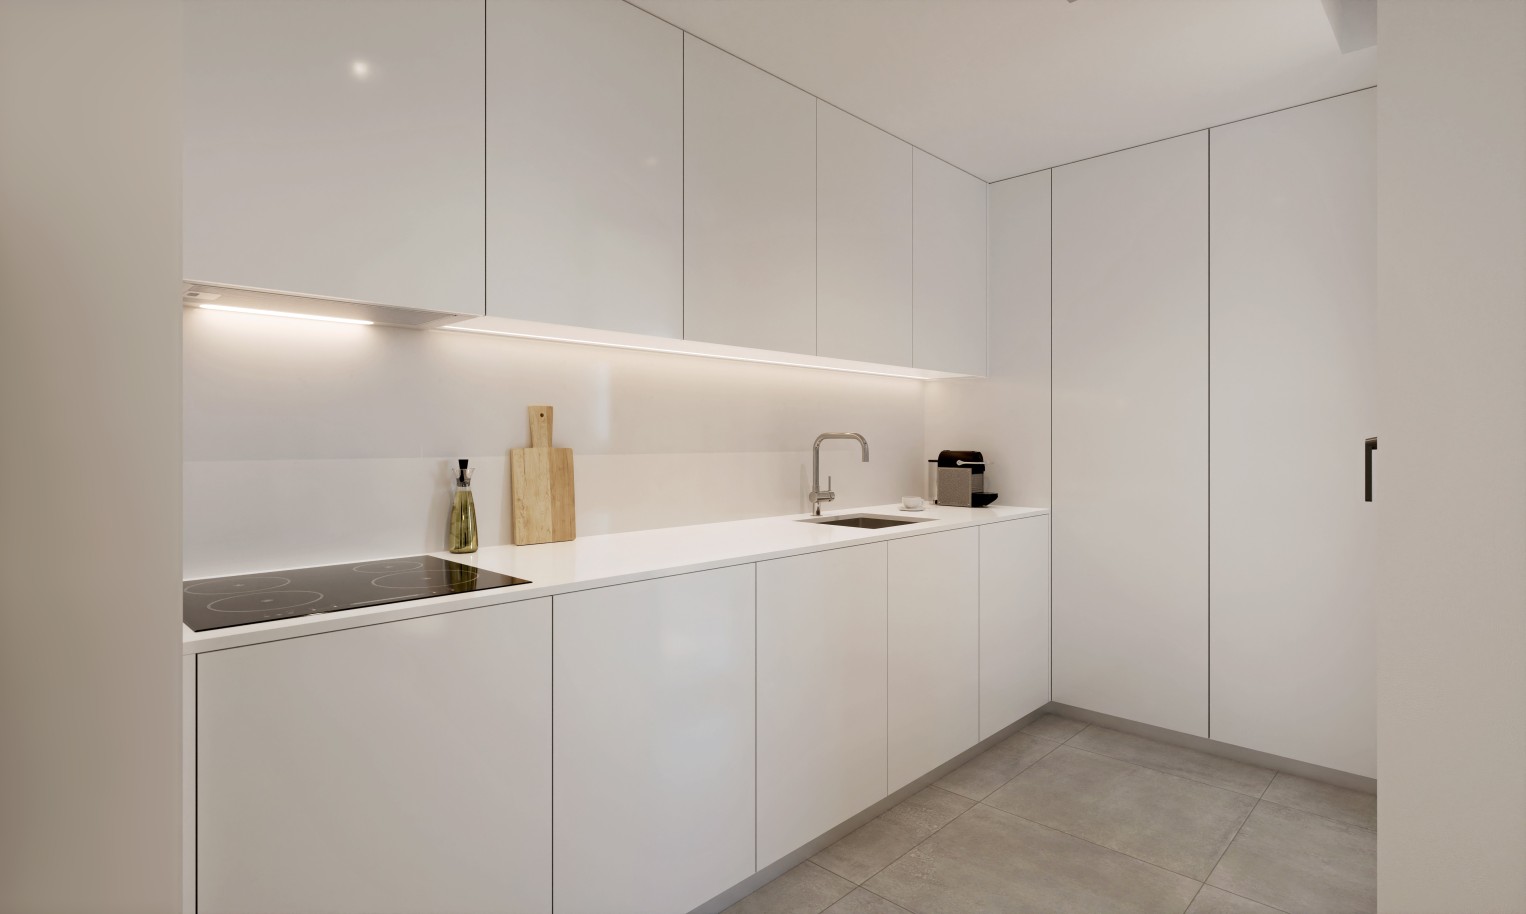 Novo apartamento 2 quartos, para venda em Porto de Mós, Lagos, Algarve_235053